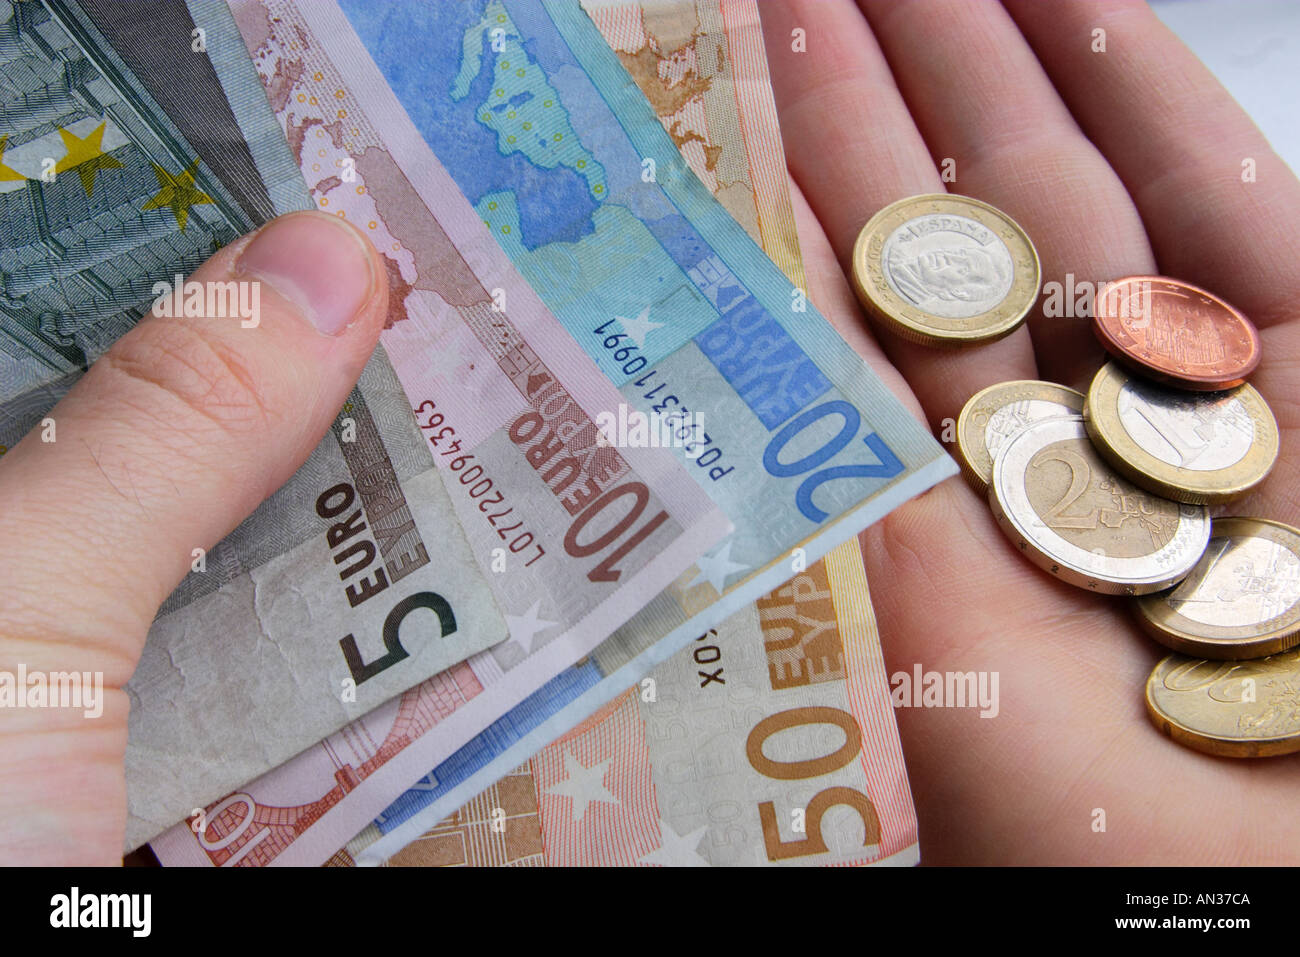 Euro-Bargeld-Geld-Konten Wirtschaft Investment banking bezahlen Budget steuerliche Währungsaustausch Reichtum Banknoten Münzen Währung Stockfoto